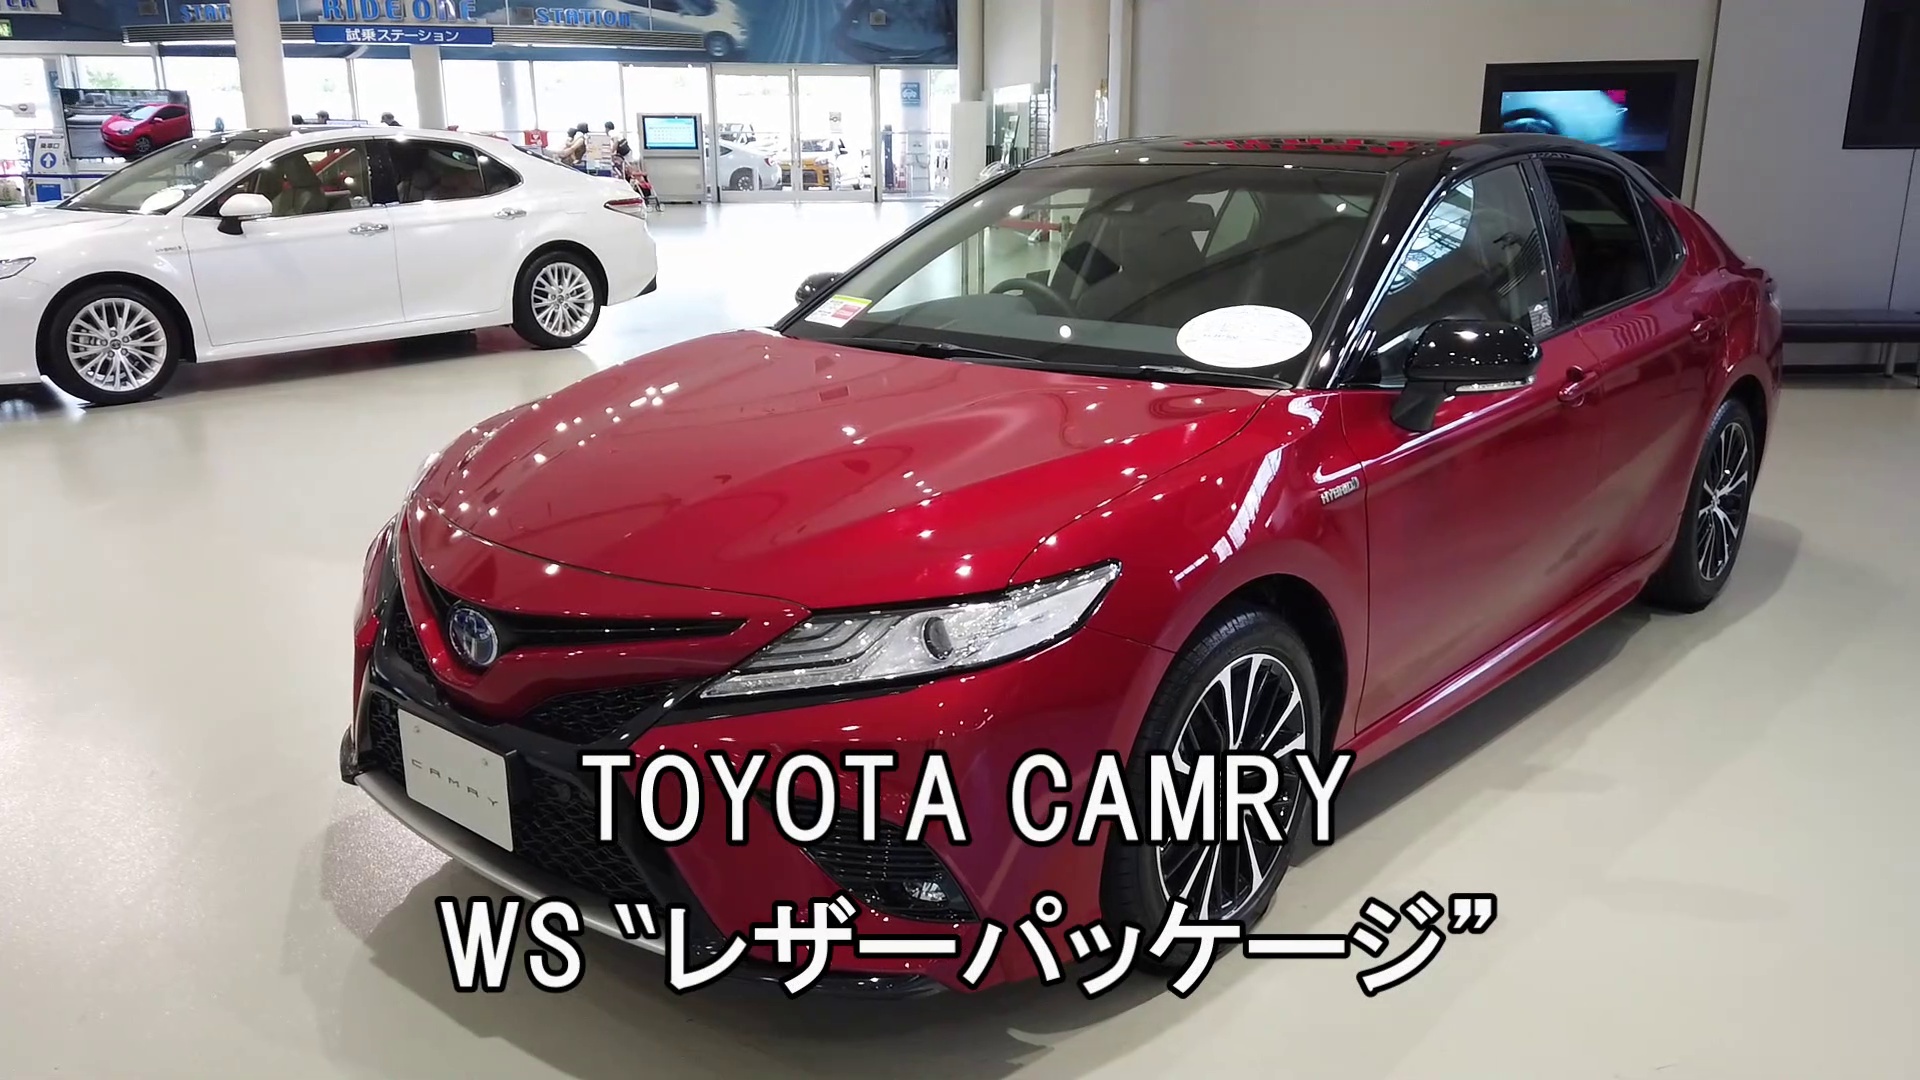 「TOYOTA CANRY WS “レザーパッケージ” 」 トヨタ カムリ